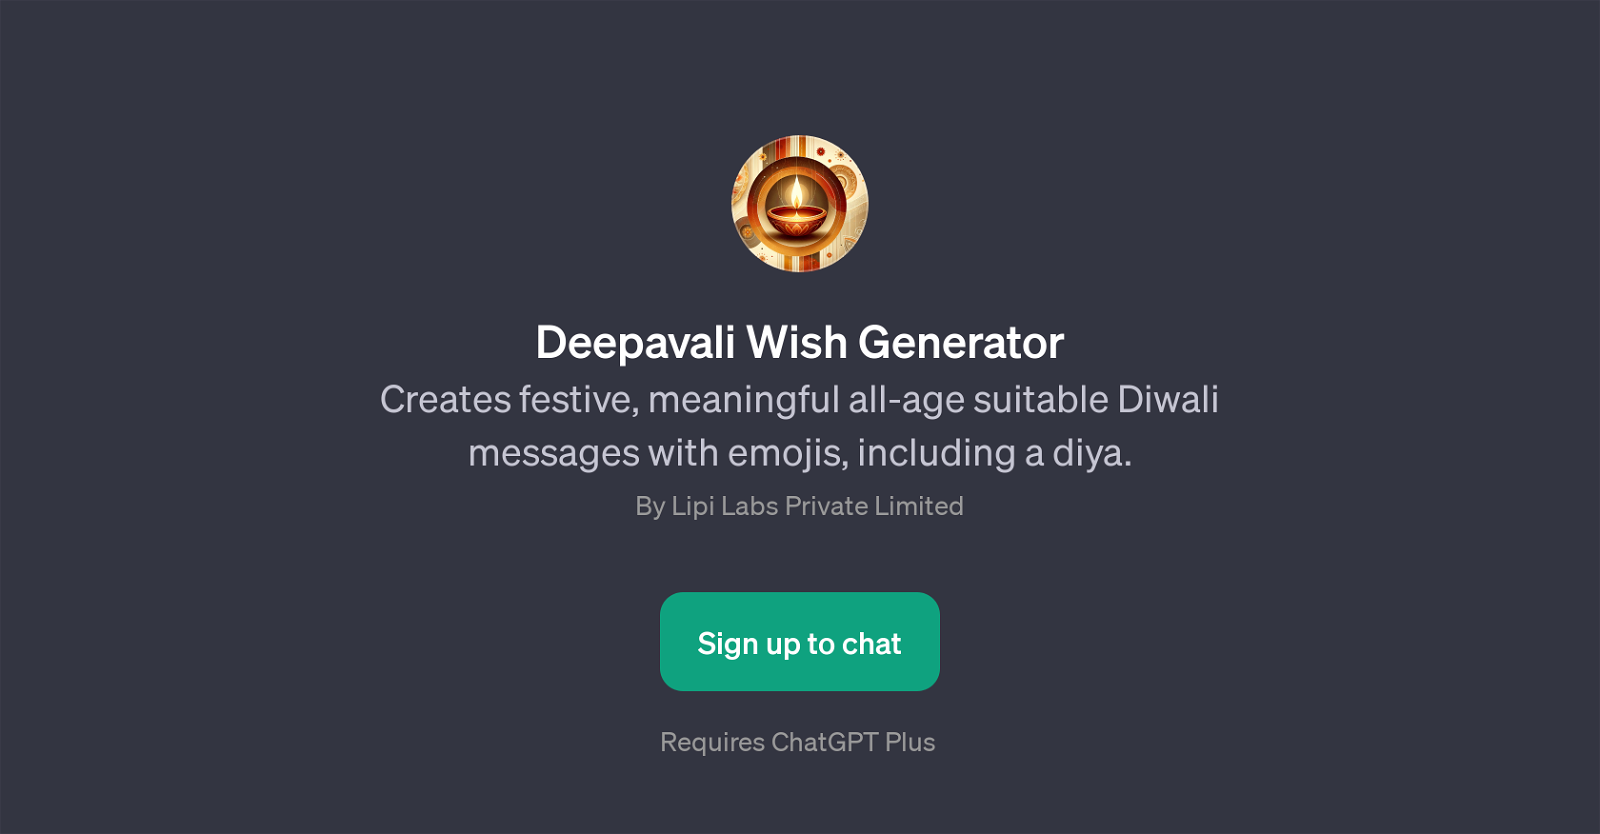 Deepavali Wish Generator website